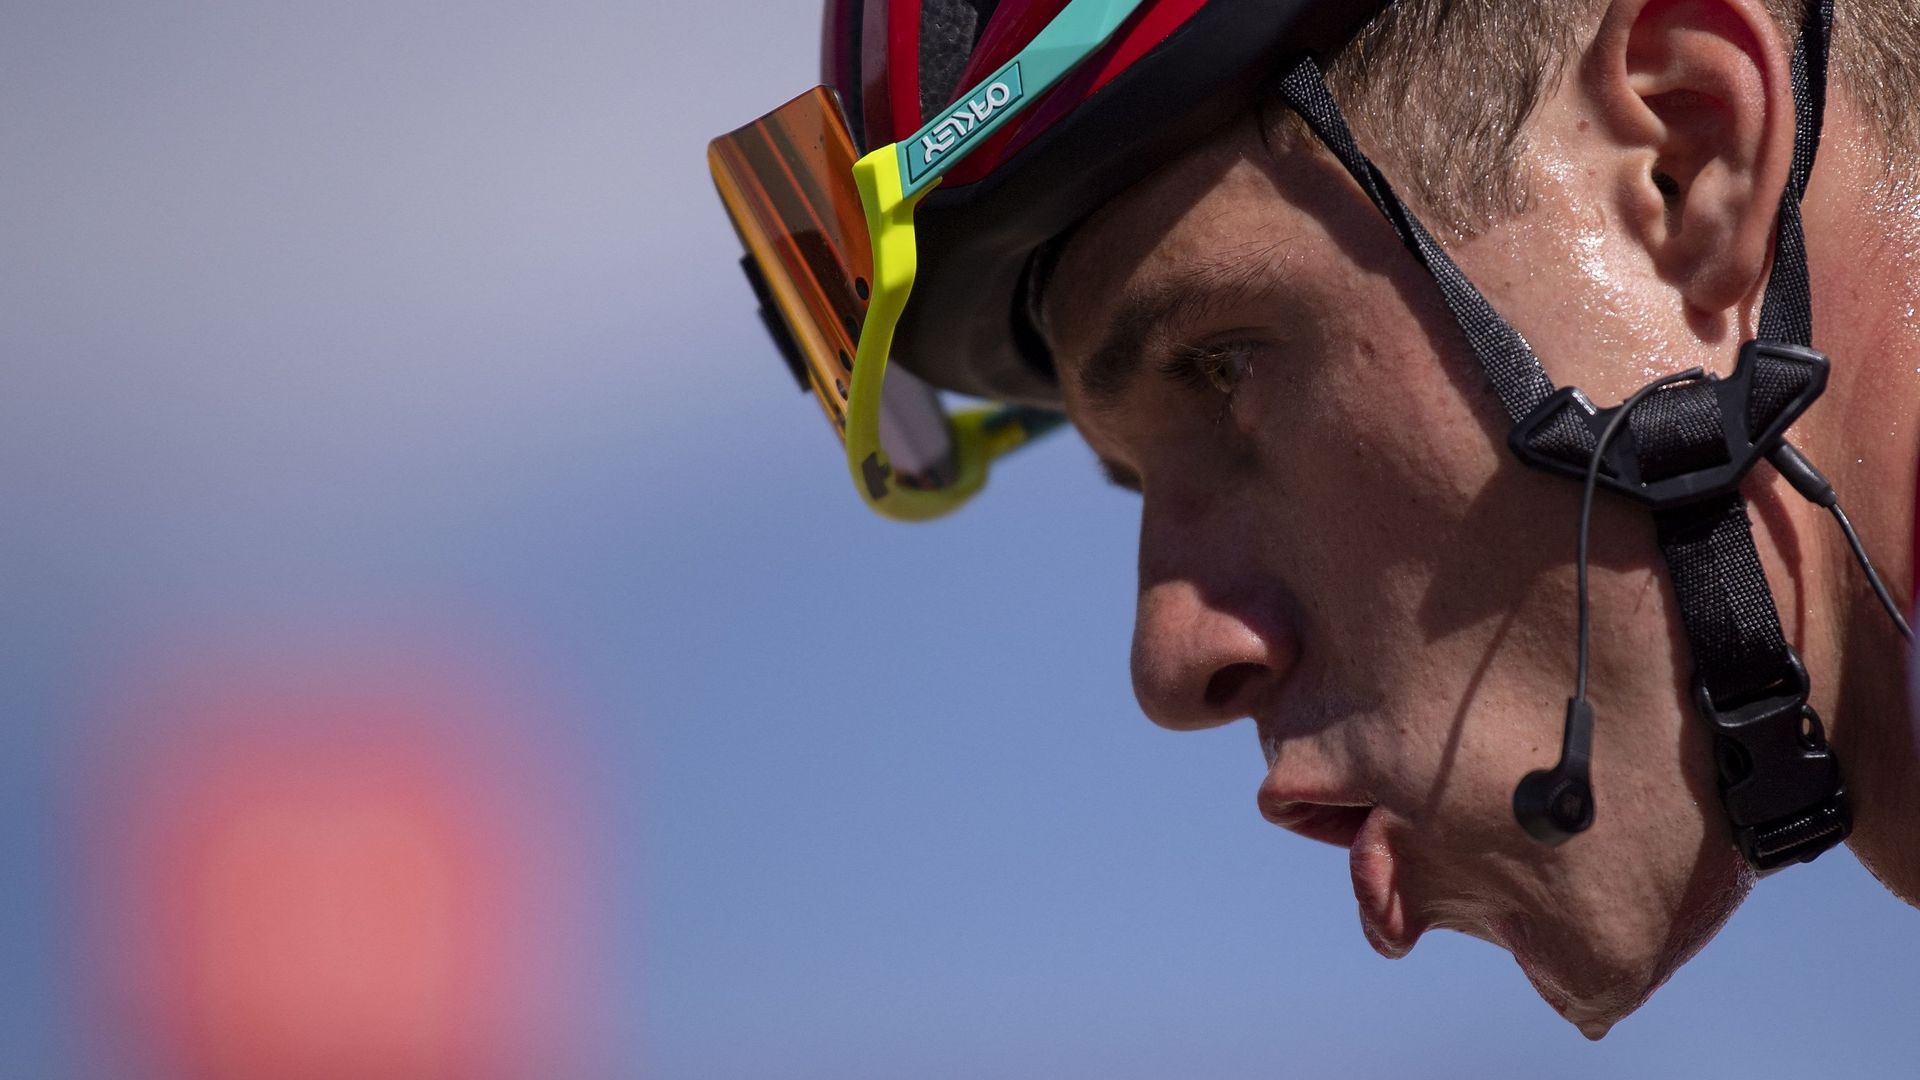 Cyclisme : Gros plan de Remco Evenepoel durant la Vuelta. En trois semaines, le jeune coureur de 22 ans s’est érigé en leader de grand tour.